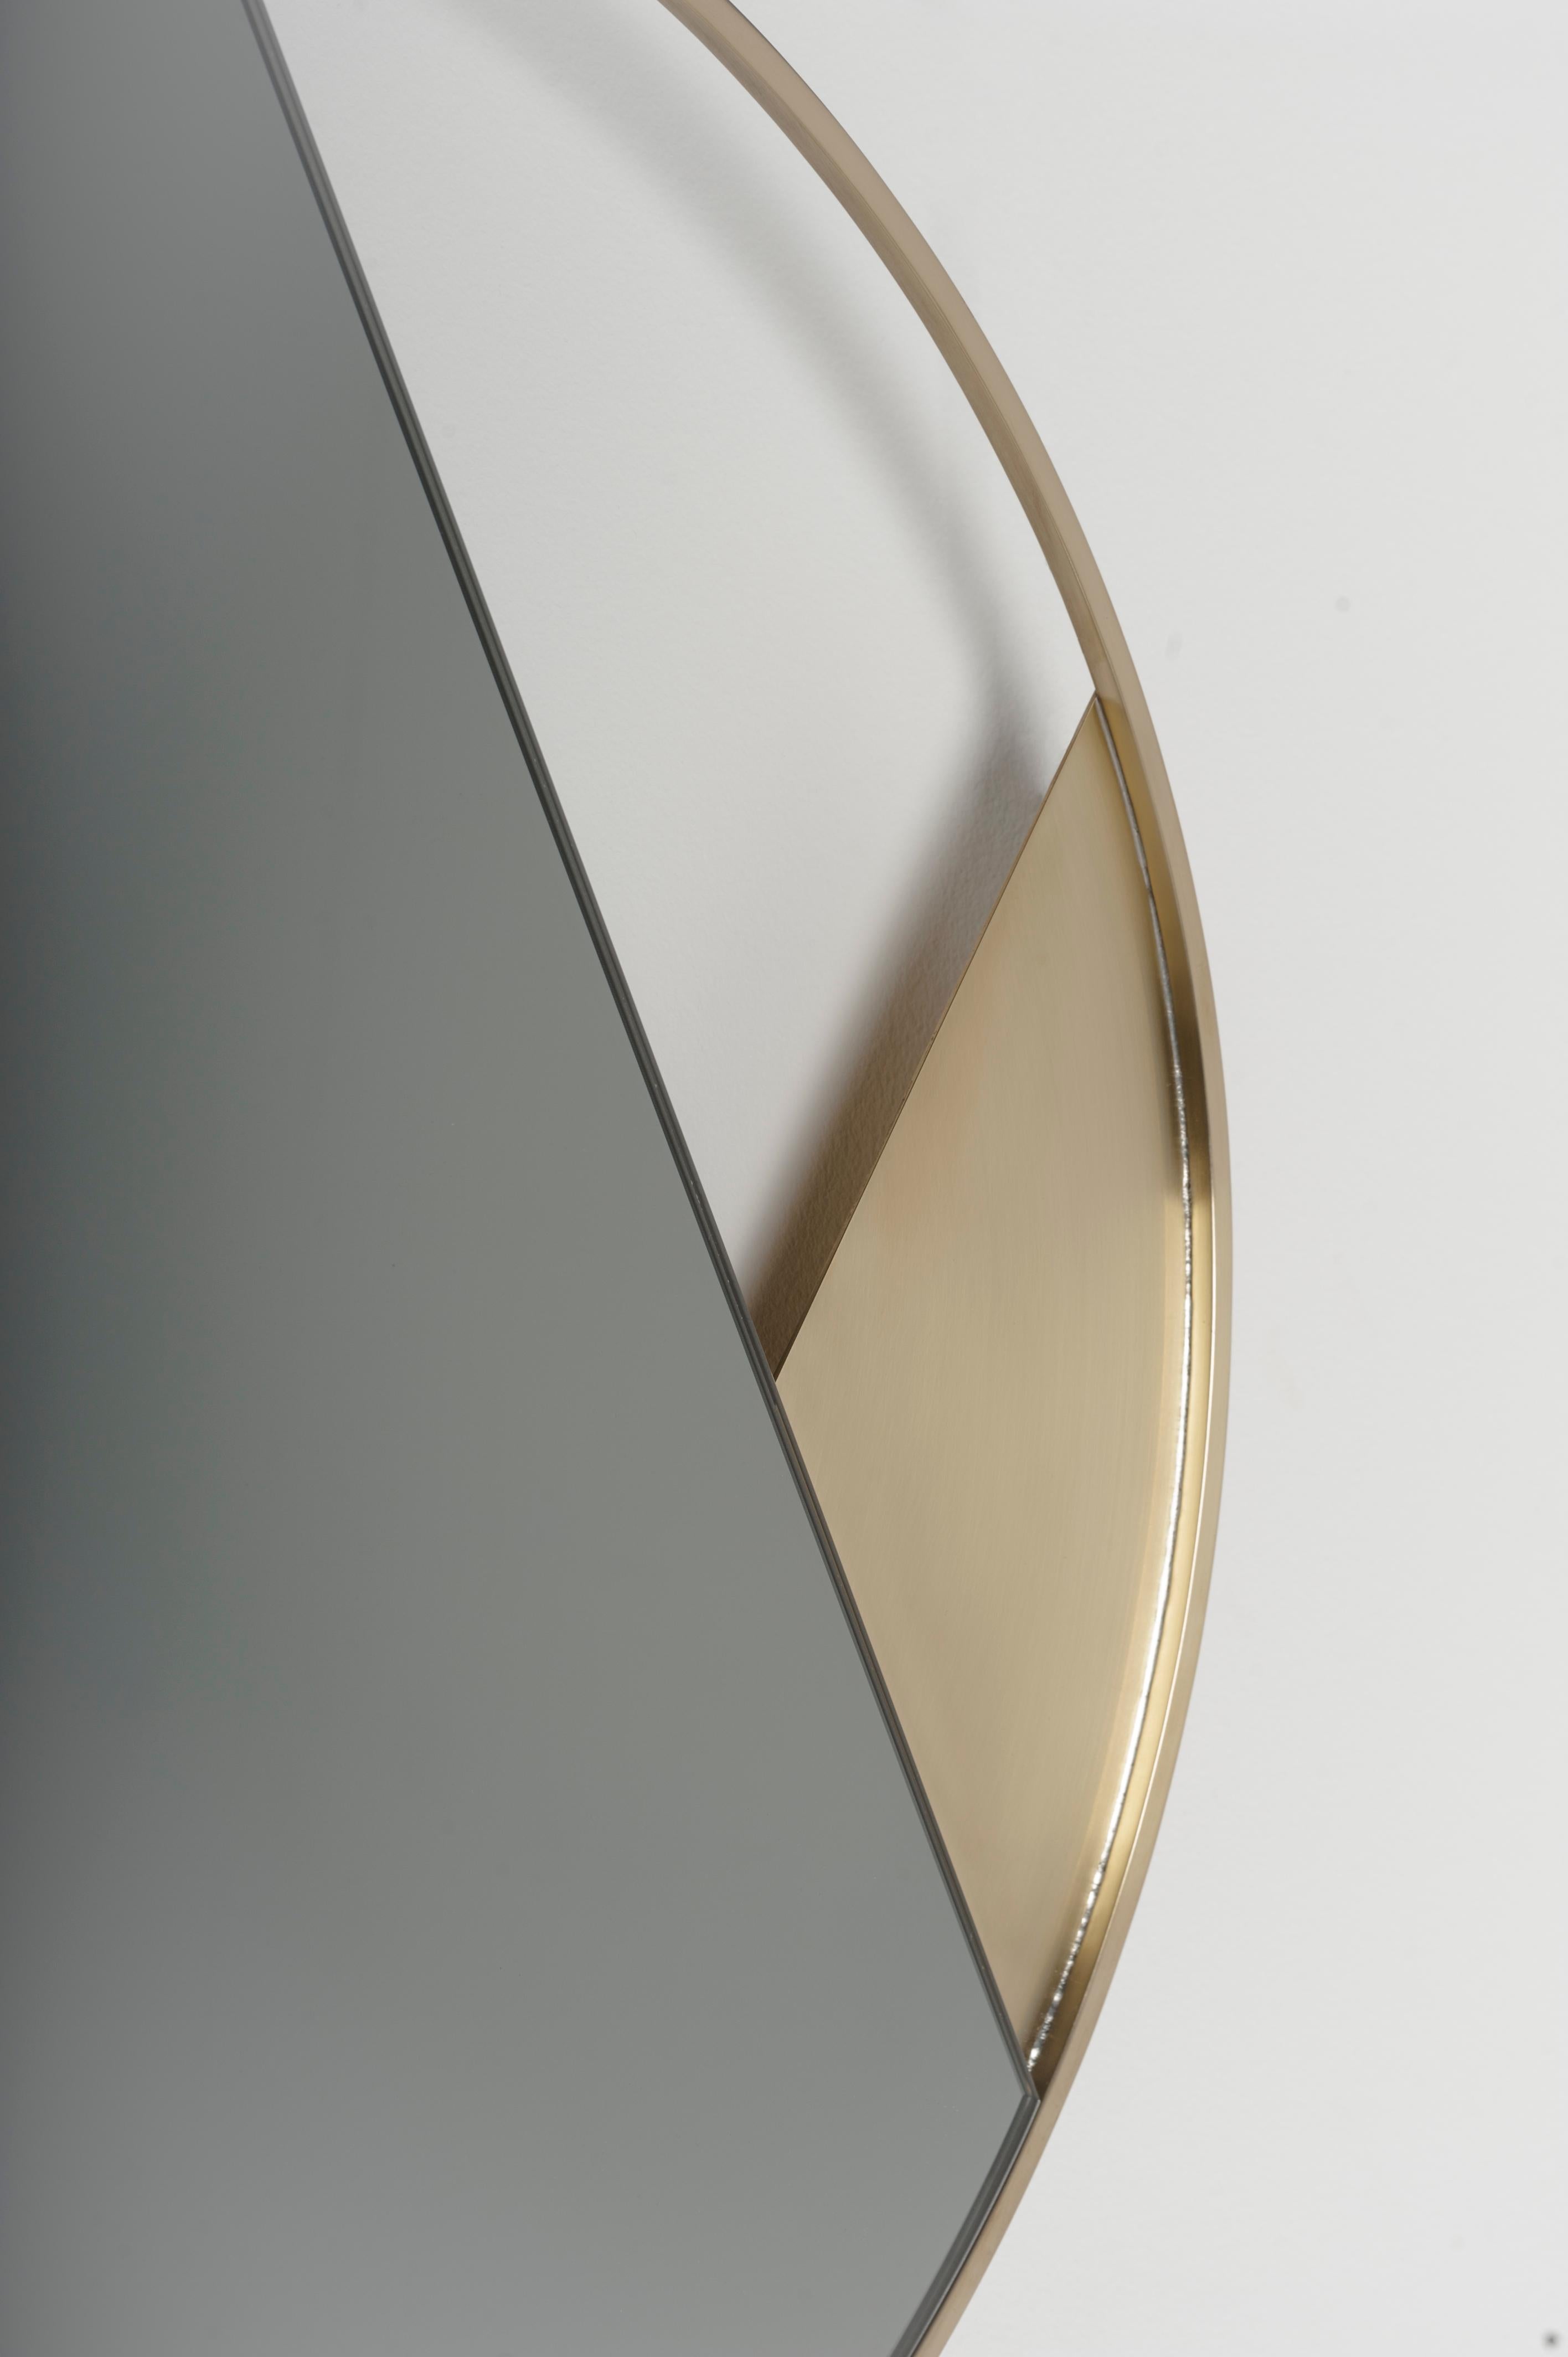 Italian Contemporary Limited Edition Brass Mirror, Revolution 55 V2 by Edizione Limitata For Sale